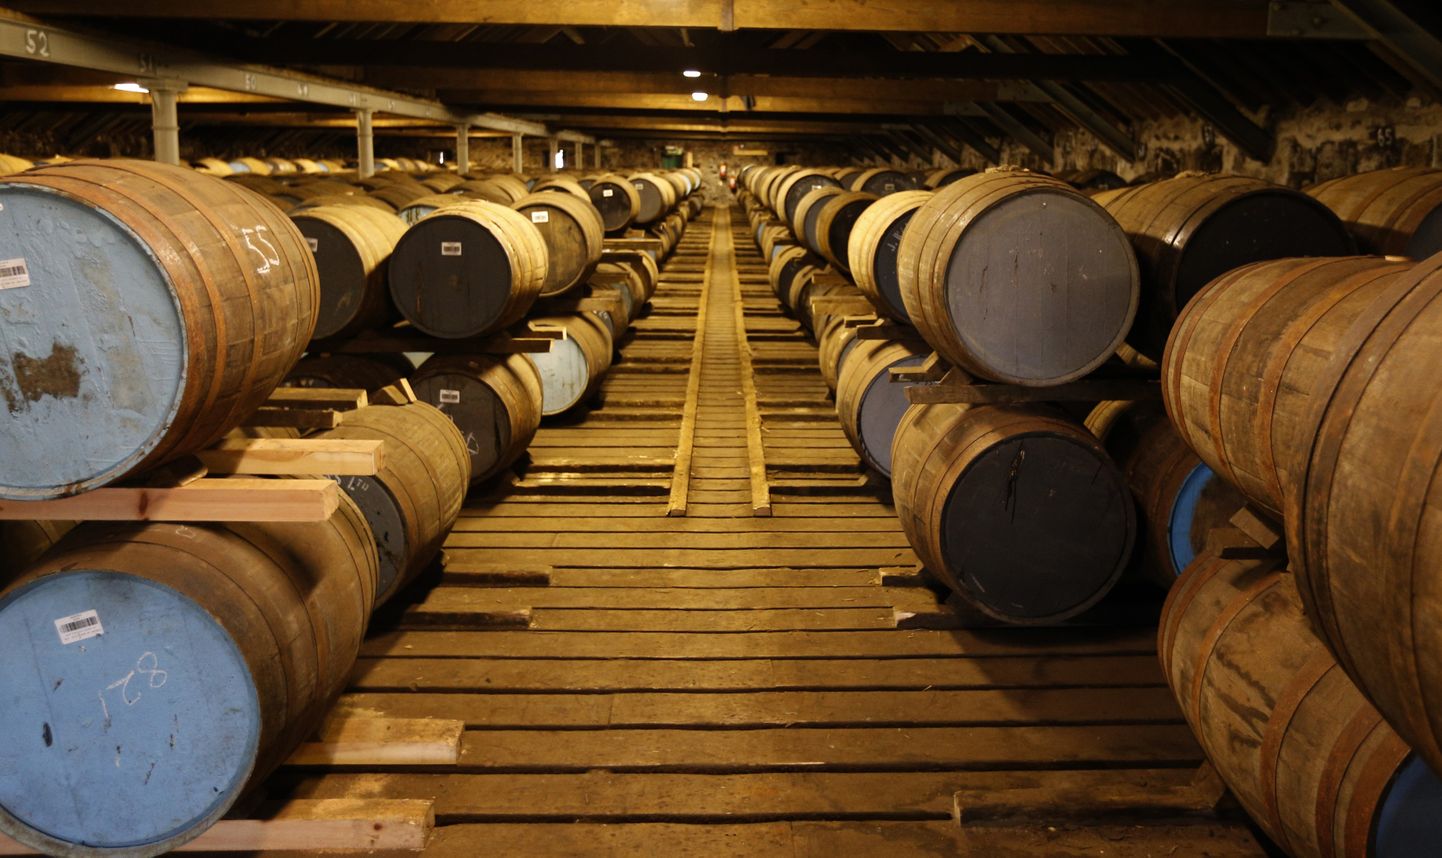 Viskivaadid Diageole kuuluvas Cardhu viskitehases Šotimaal.